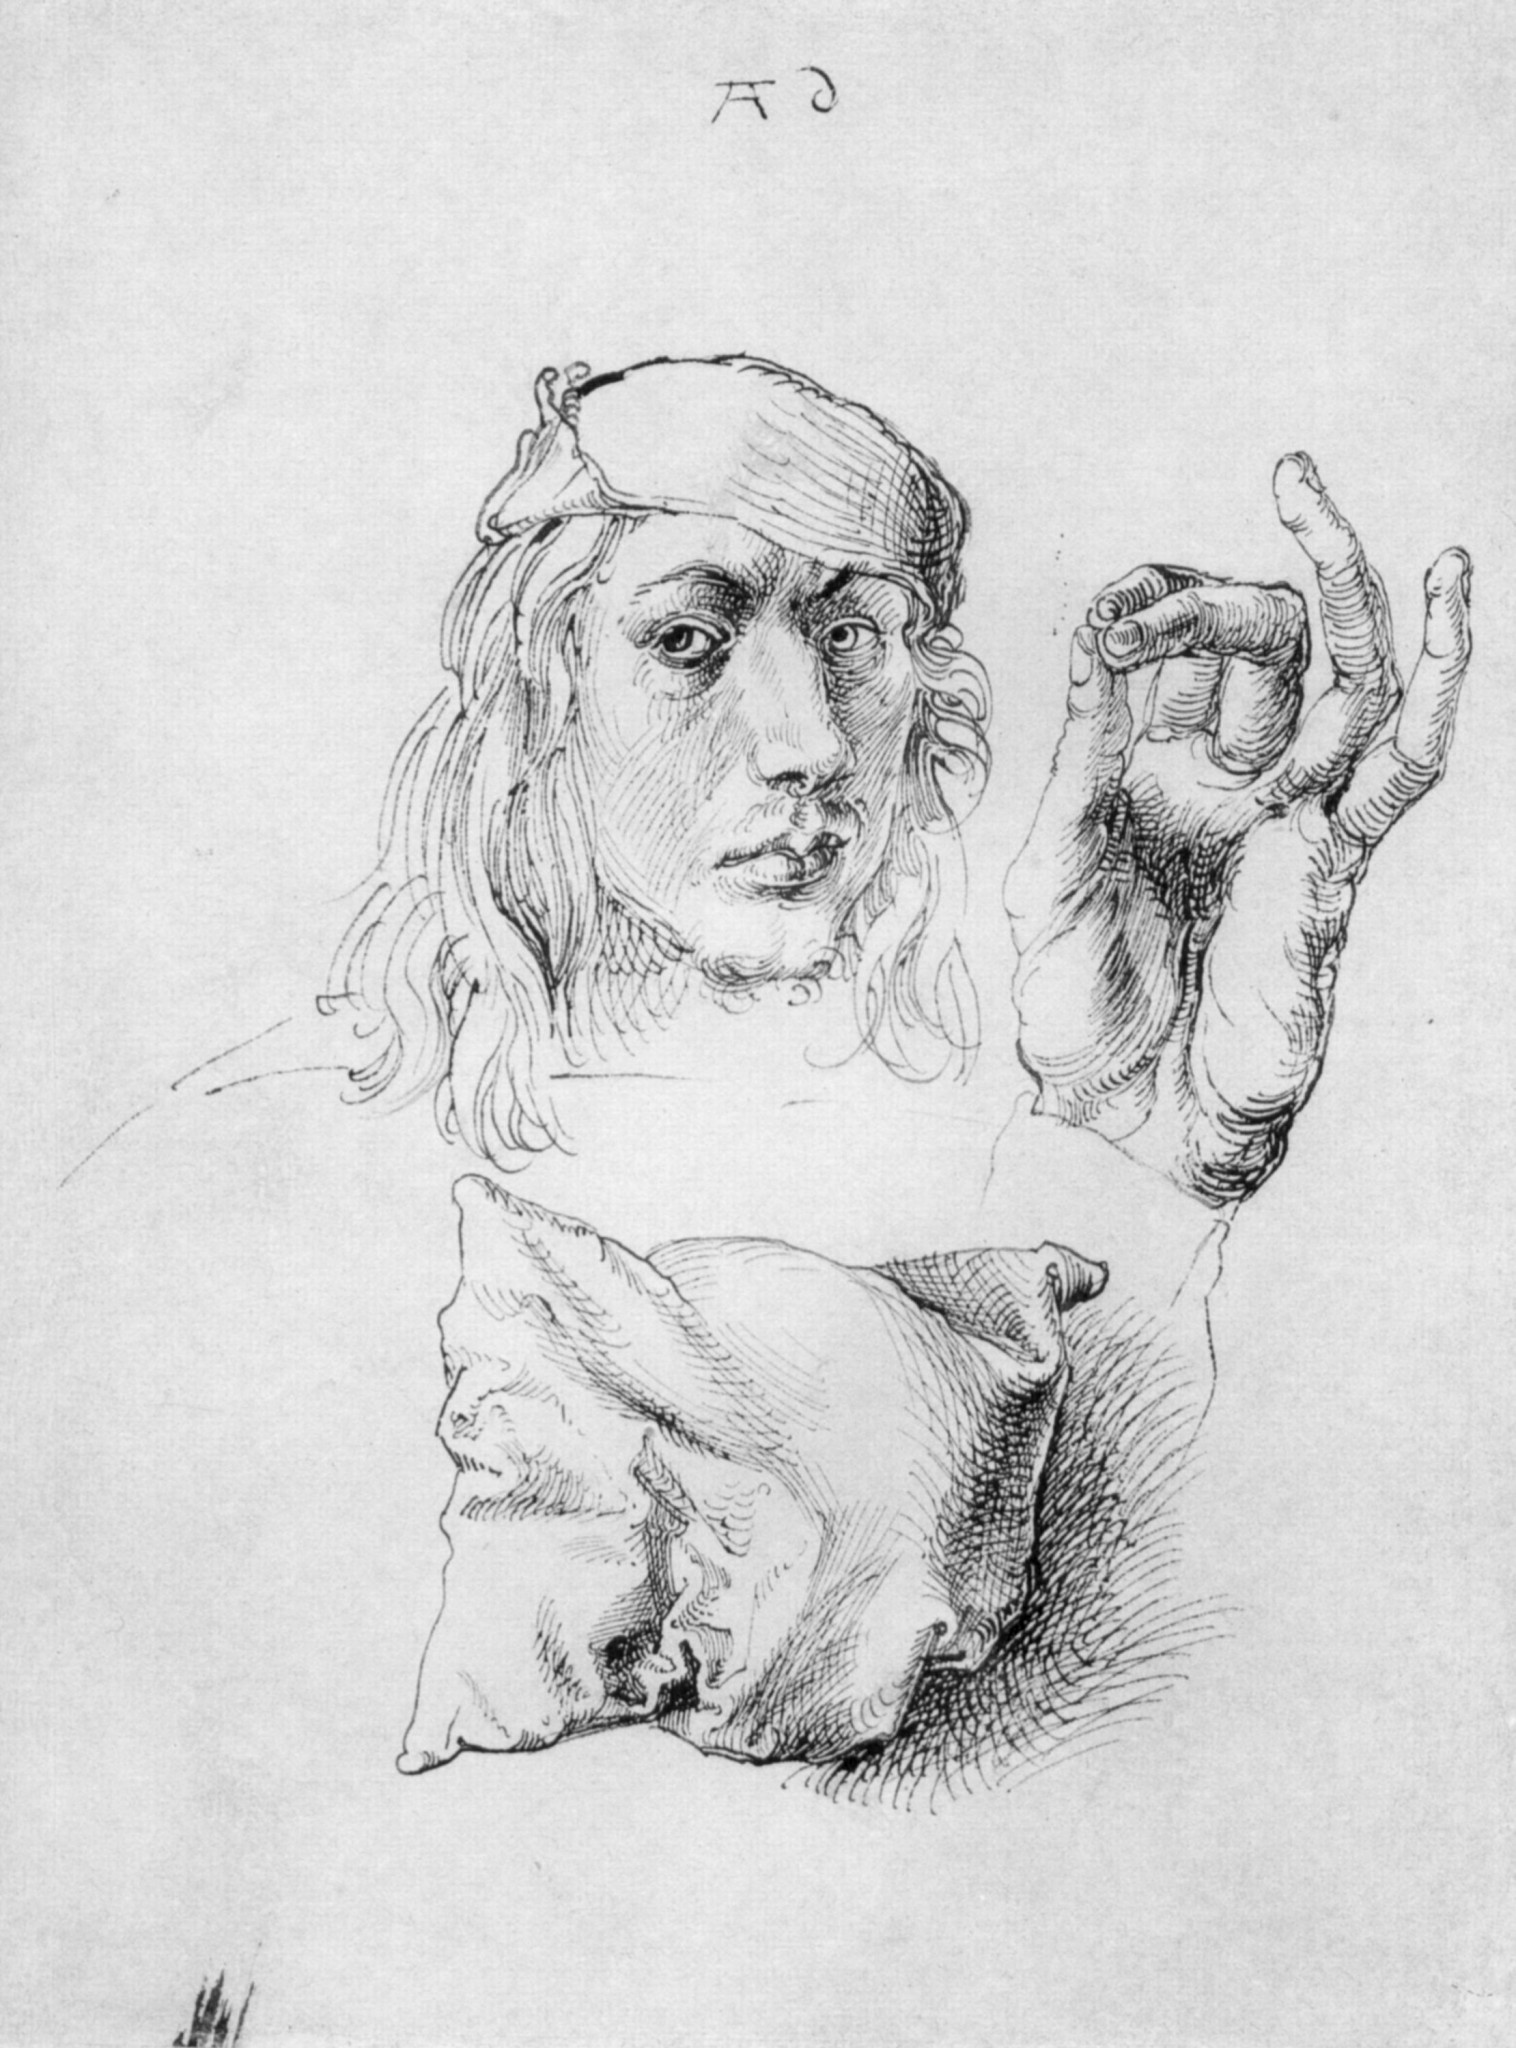 Albrecht Dürer (1493. Наброски. Подушка кисть руки и автопортрет в 22 года)